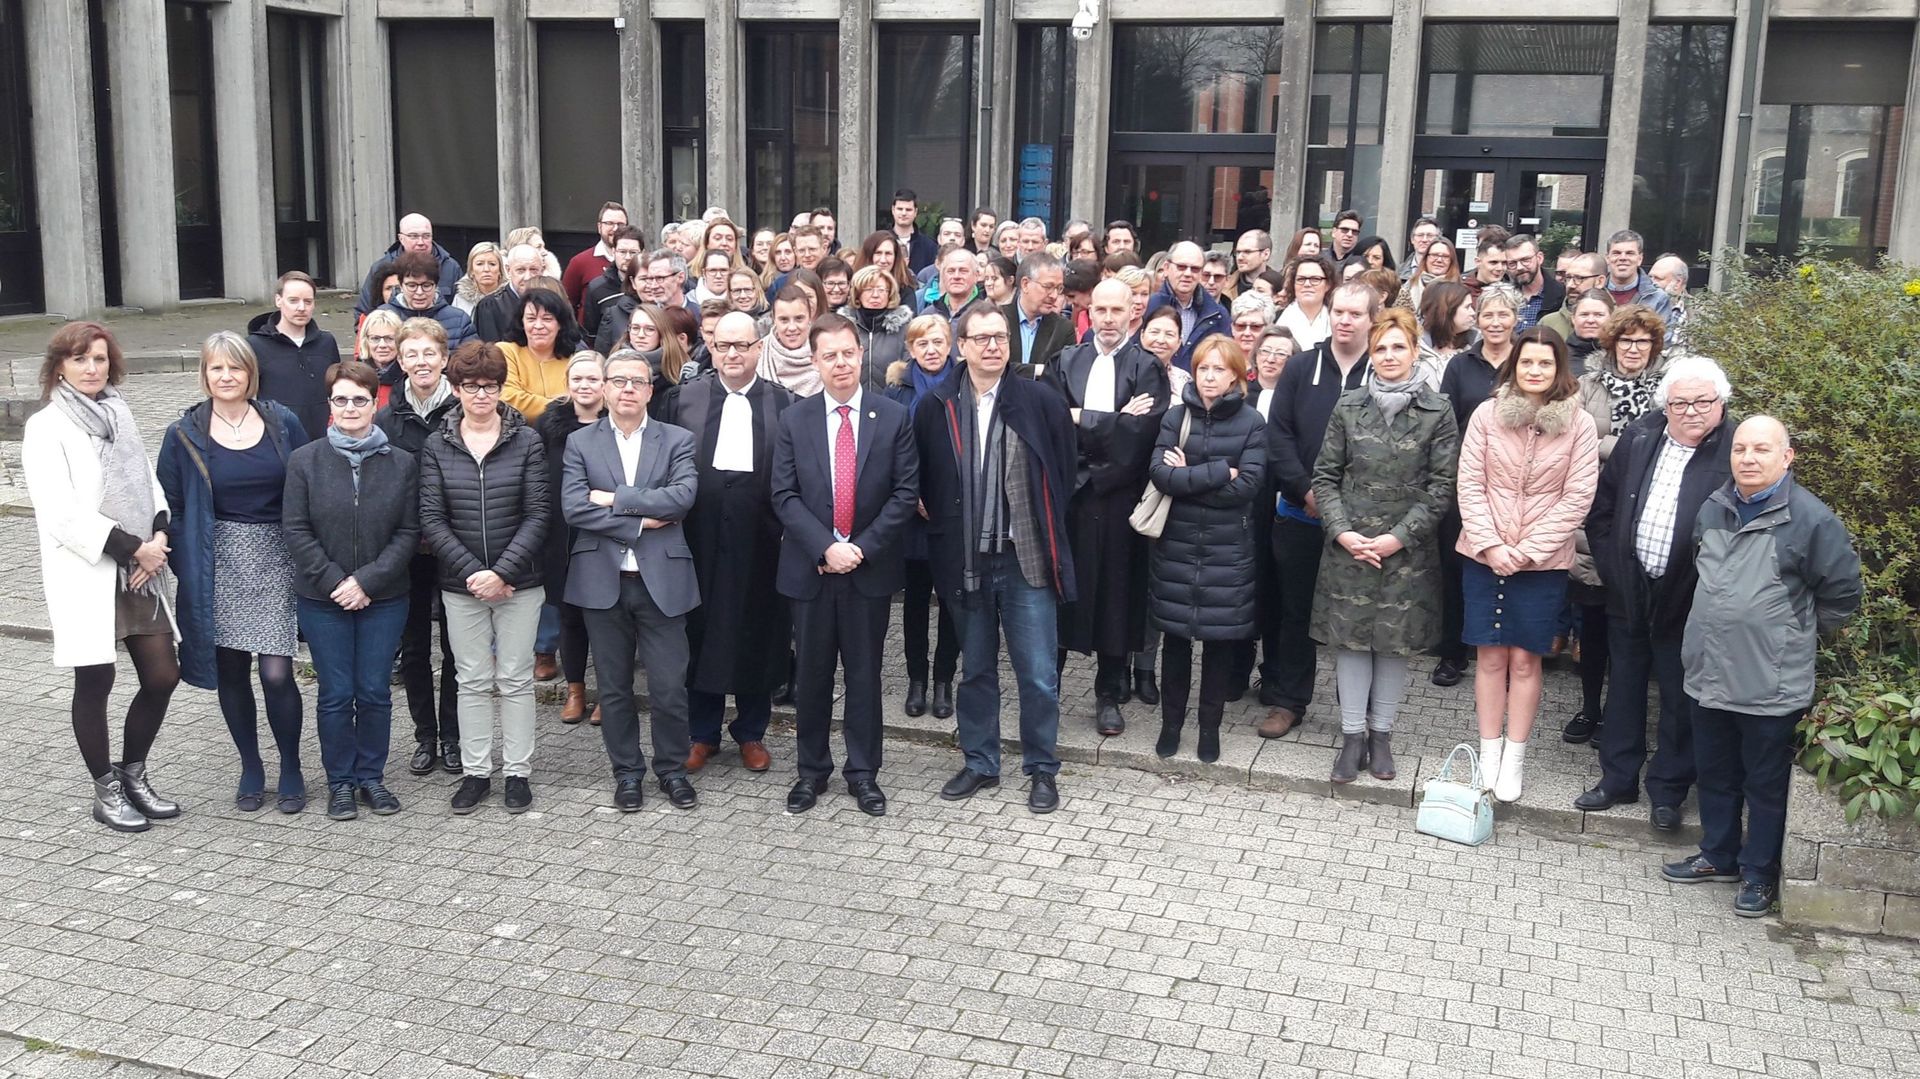 100 acteurs de la justice réunis devant le tribunal de Bruges